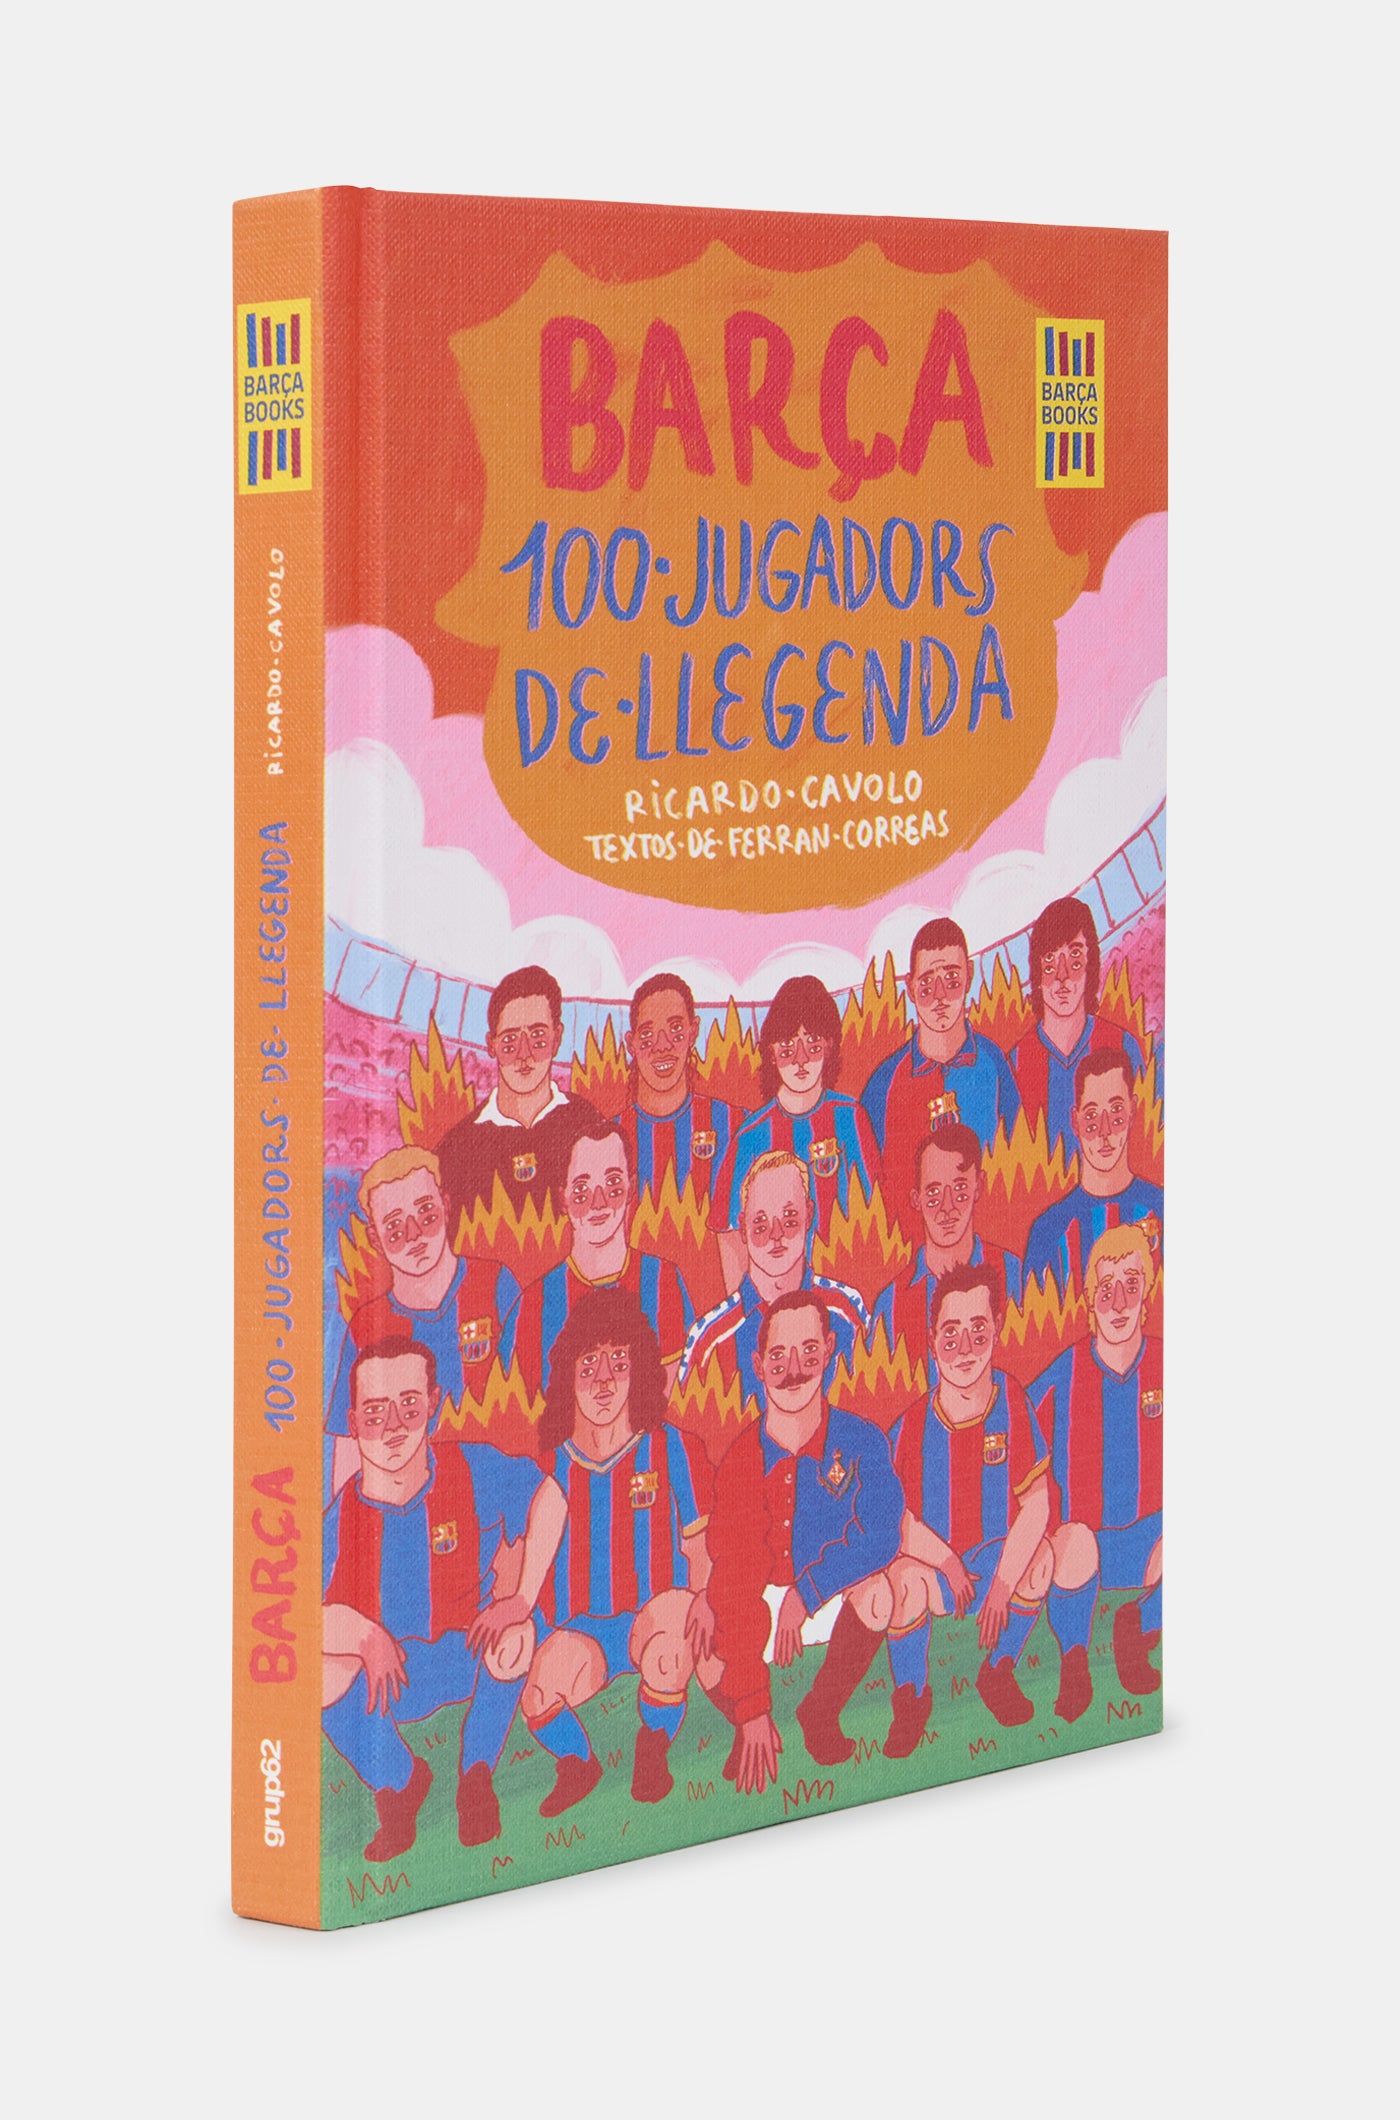 Buch "Barça. 100 jugadores de leyenda"